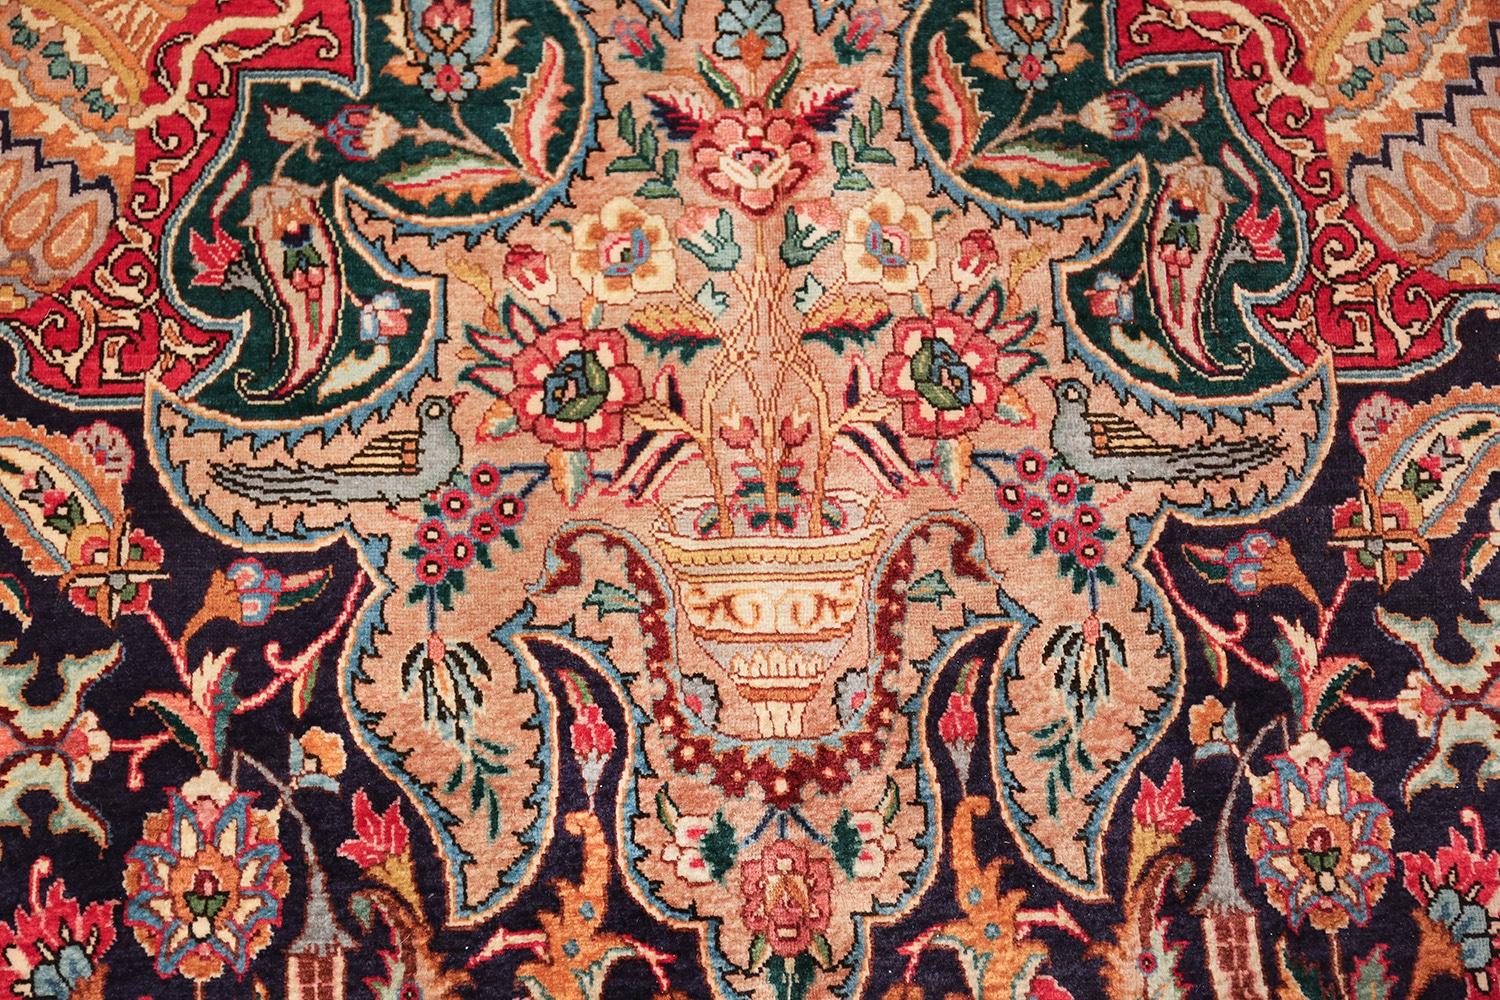 Magnifique grand tapis persan Tabriz vintage, pays d'origine / type de tapis : tapis persan vintage, circa late 20th century. Taille : 12 ft 8 in x 19 ft 4 in (3,86 m x 5,89 m)

Ce tapis persan vintage utilise des motifs et des couleurs gracieuses